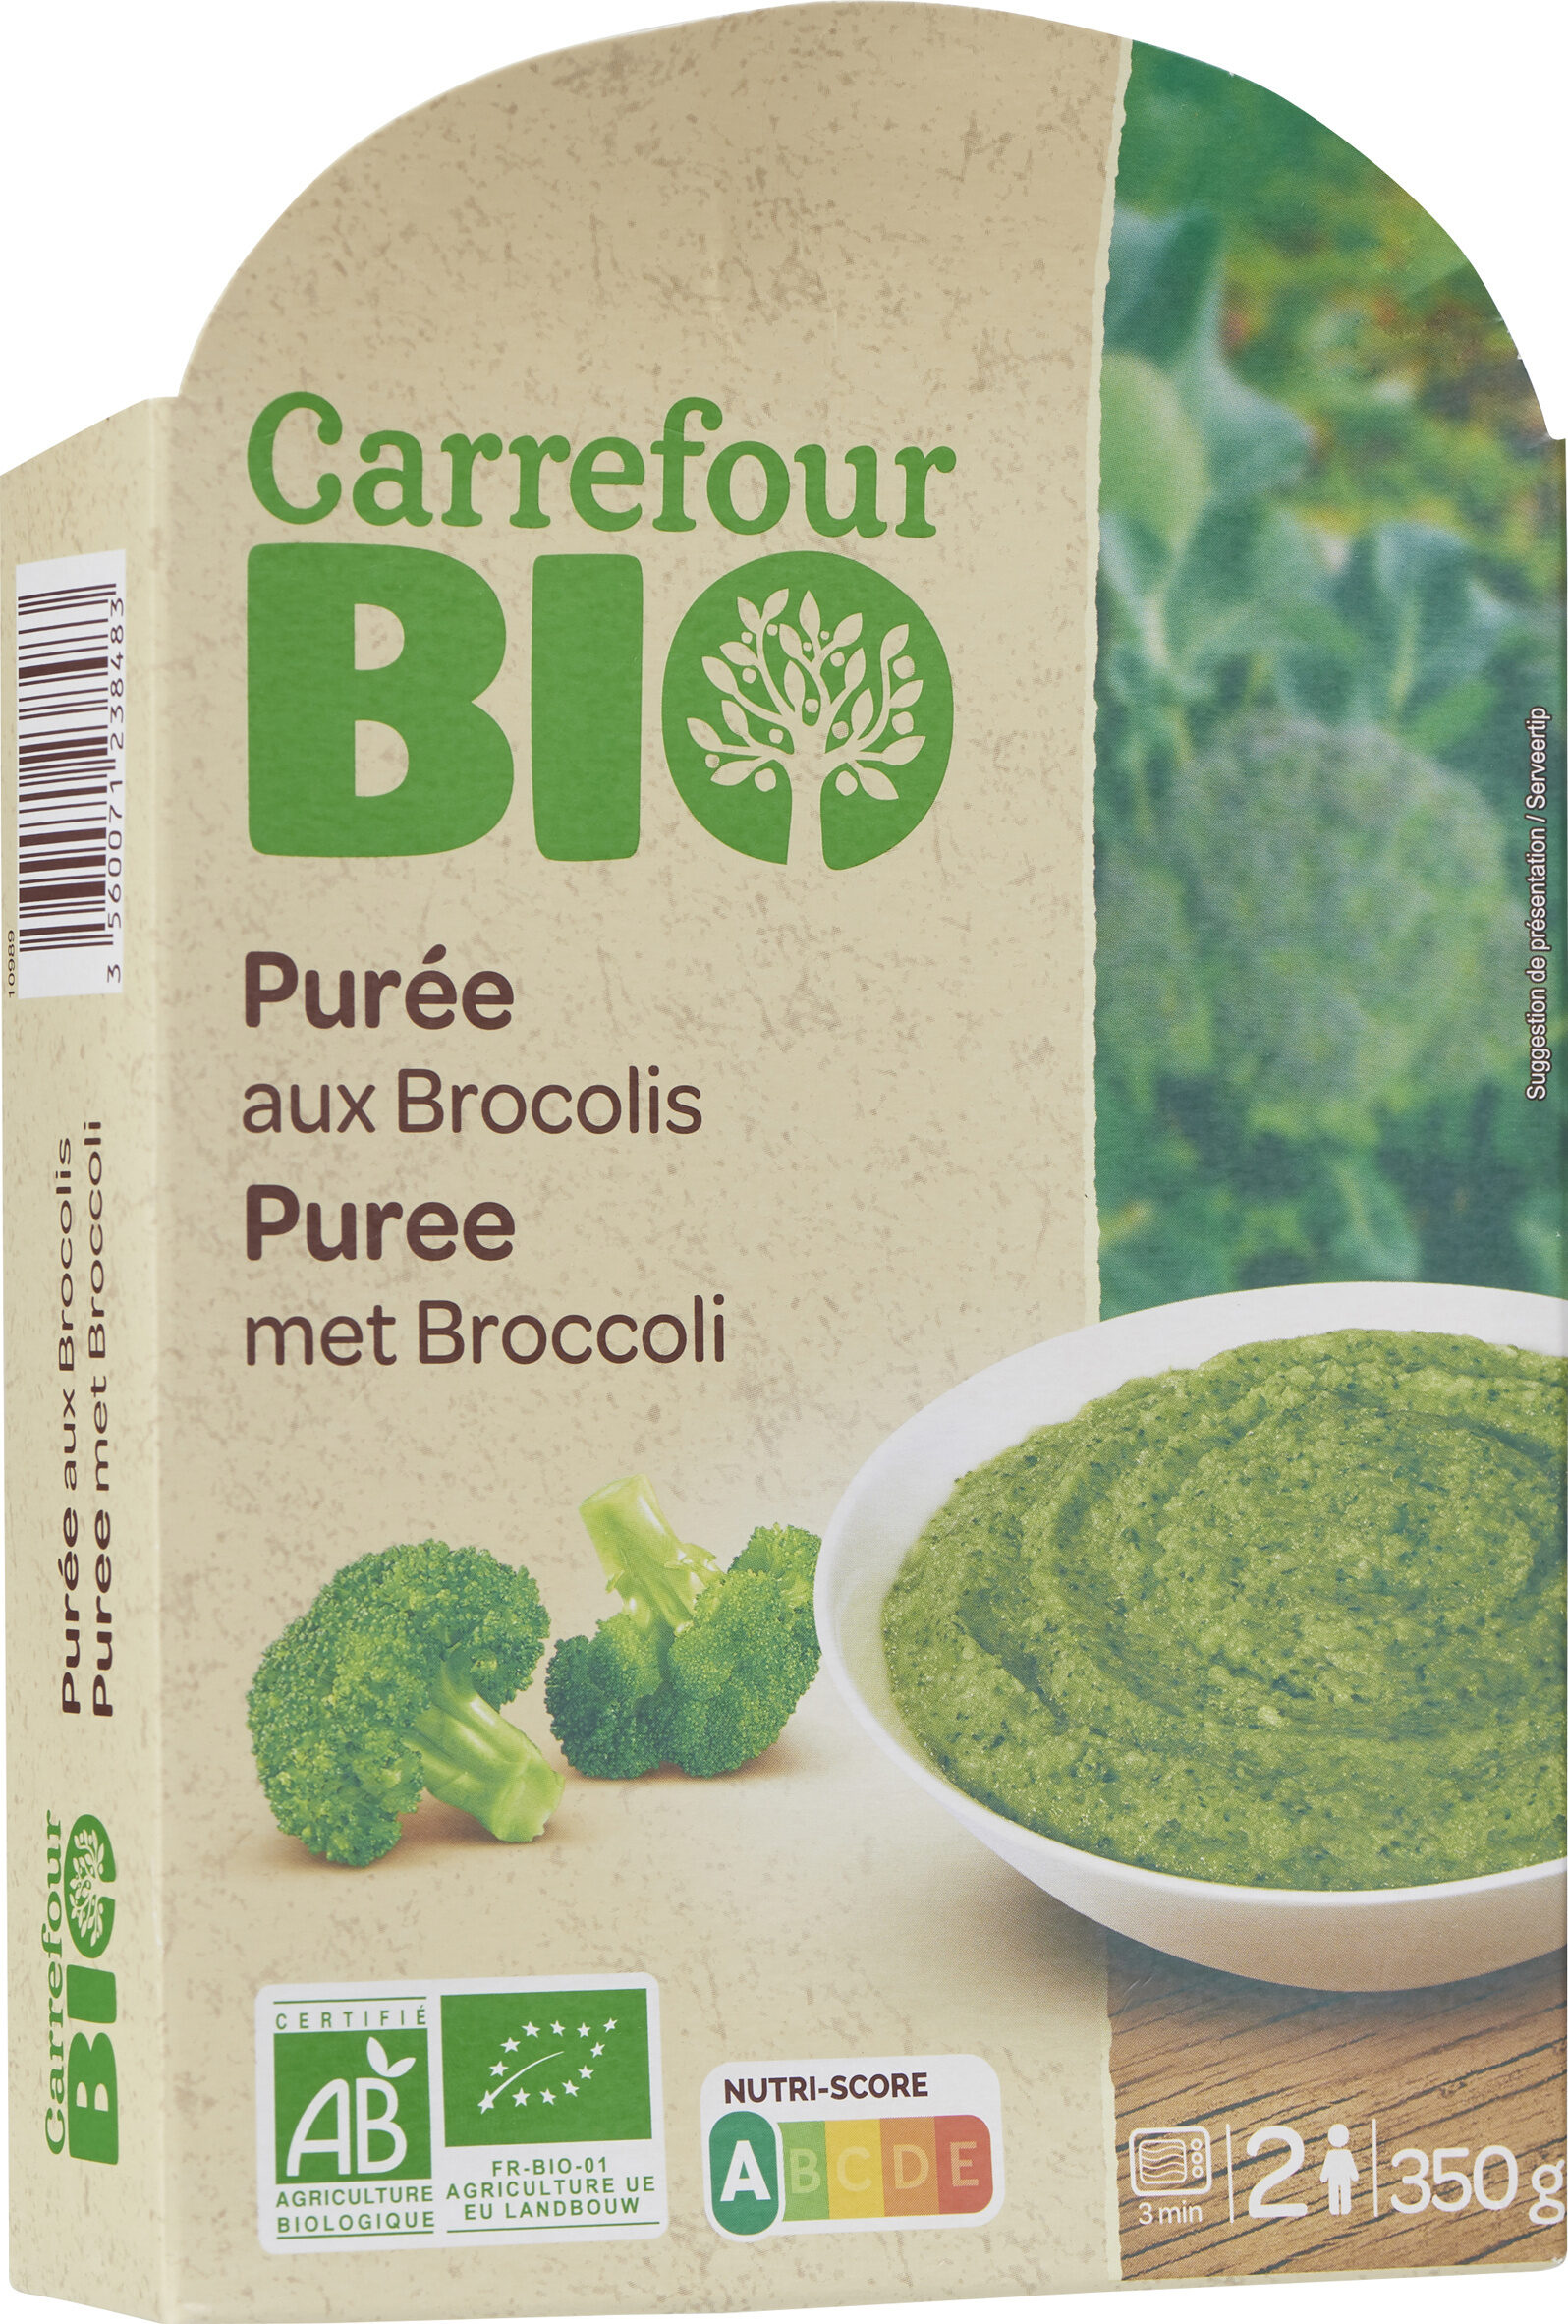 Purée aux brocolis - Product - fr